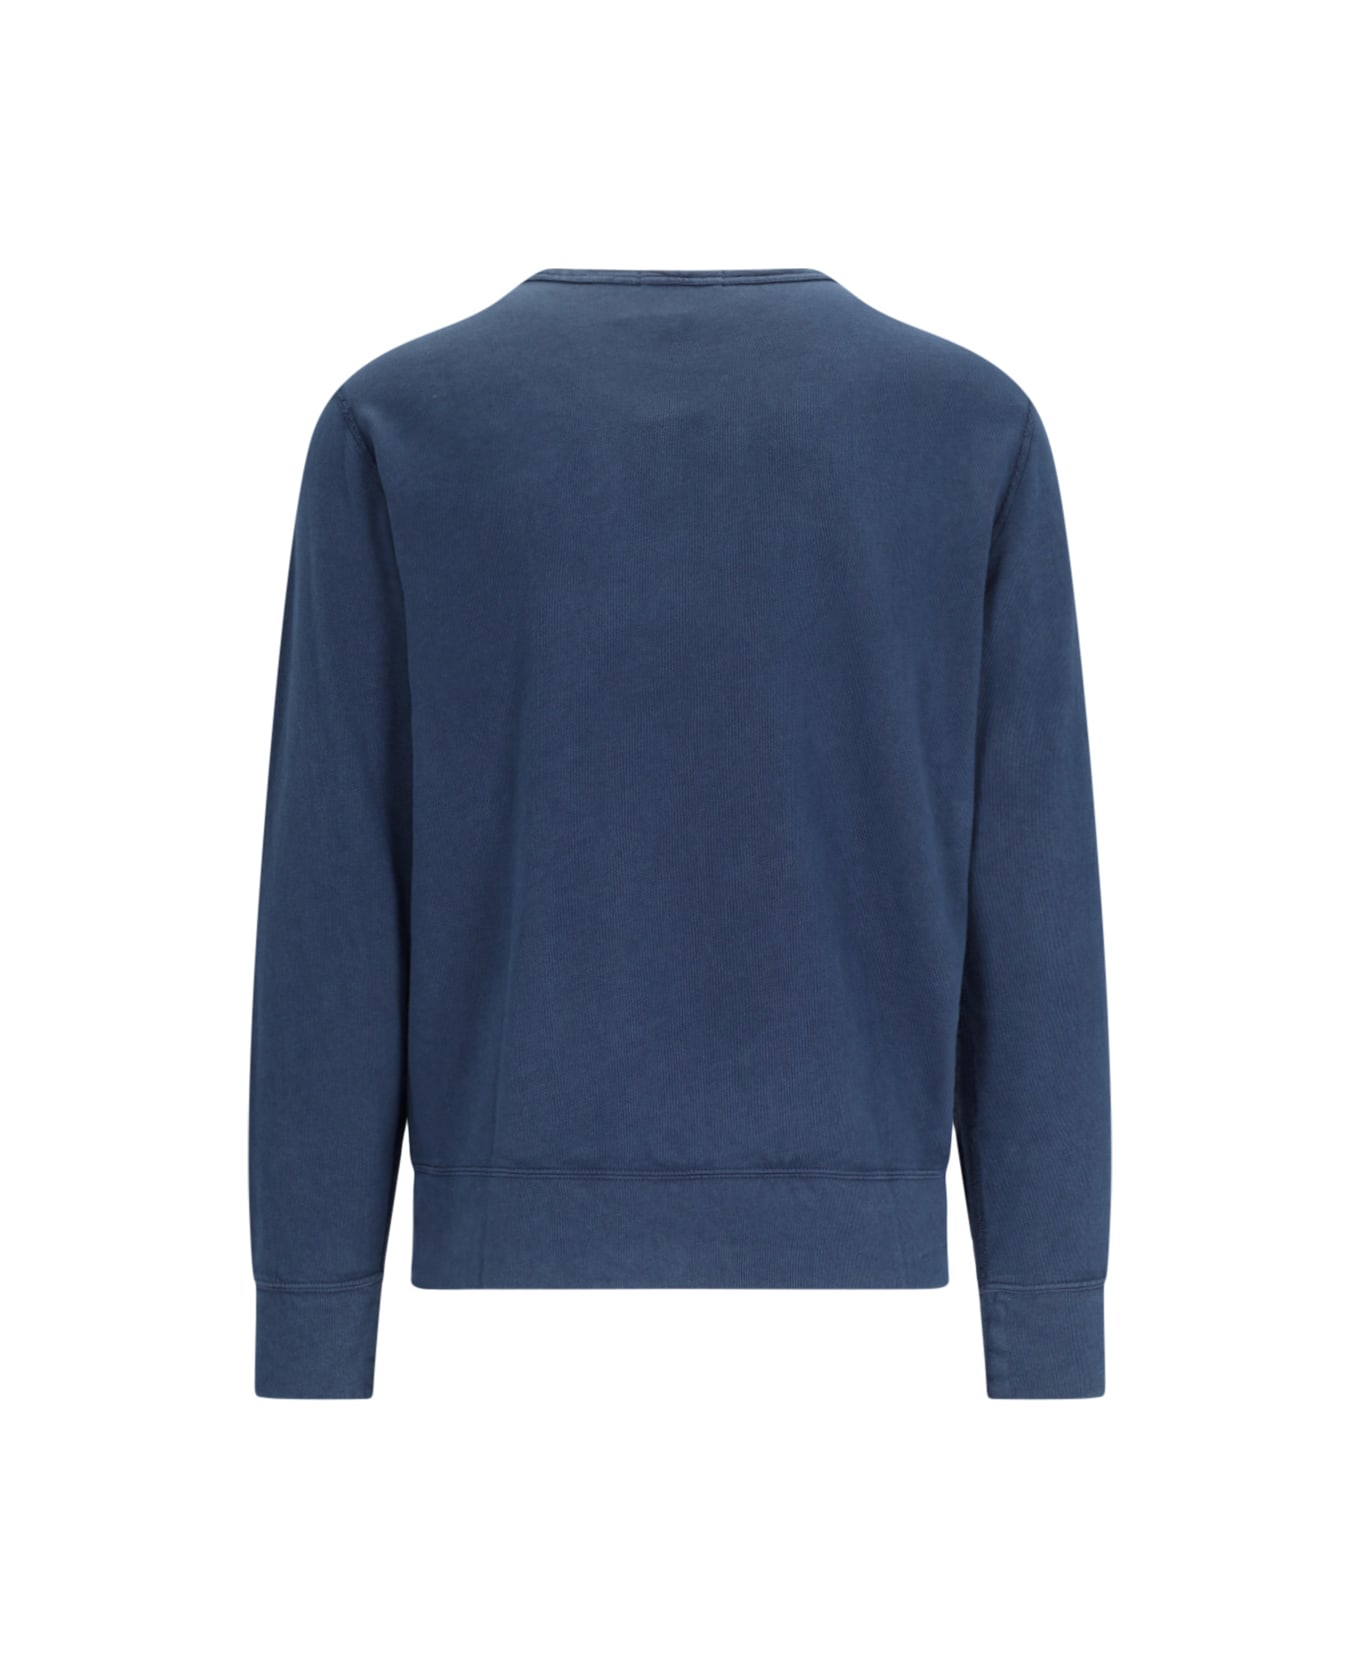 Polo Ralph Lauren Crew Neck Logo Sweatshirt - Blue